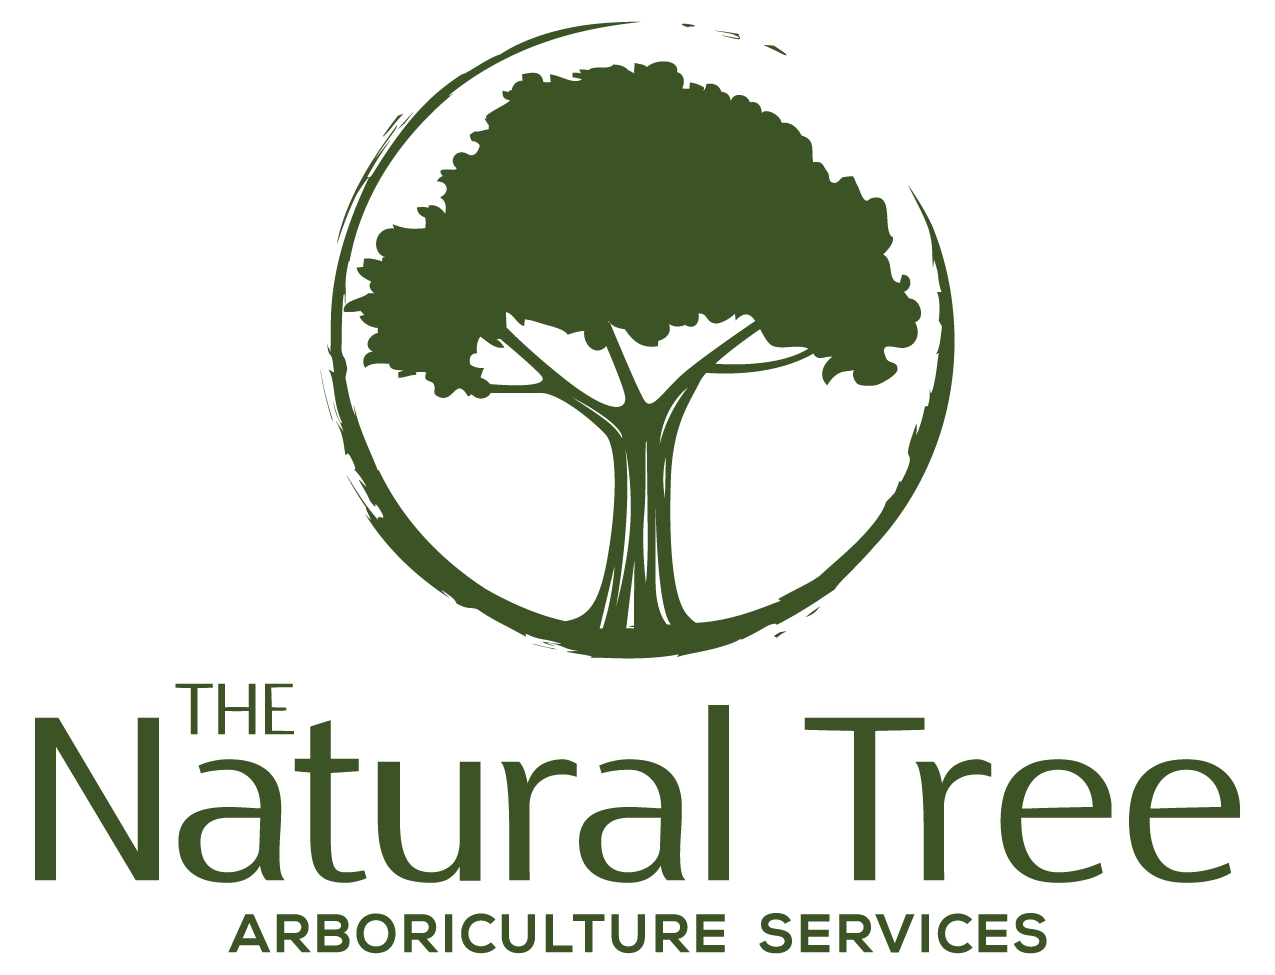 The Natural Tree Ltd